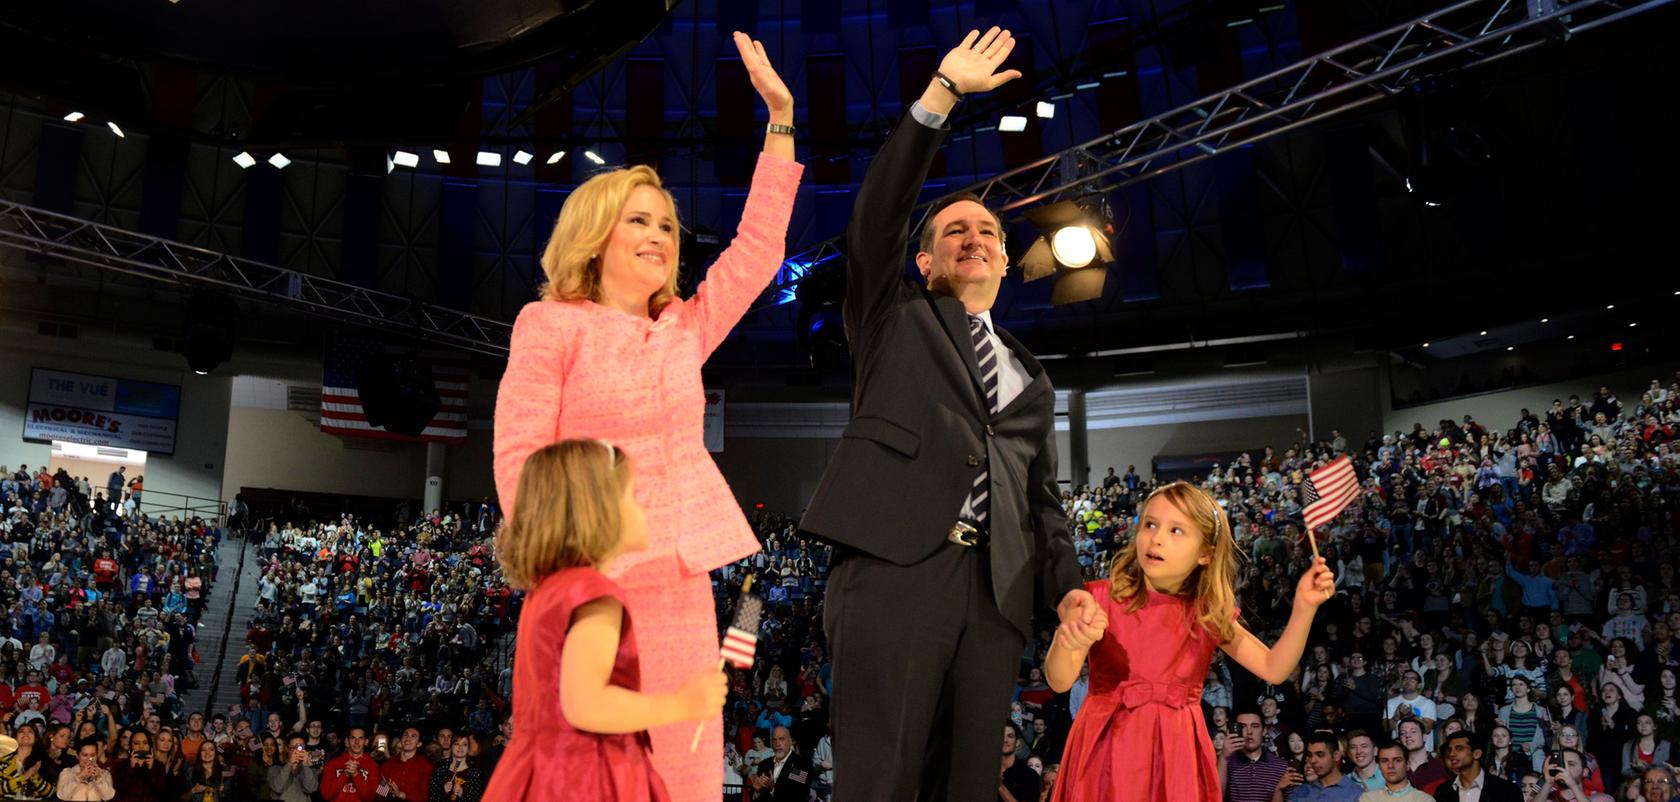 Betont familiär: Ted Cruz weiß, was bei den Wählern gut ankommt.